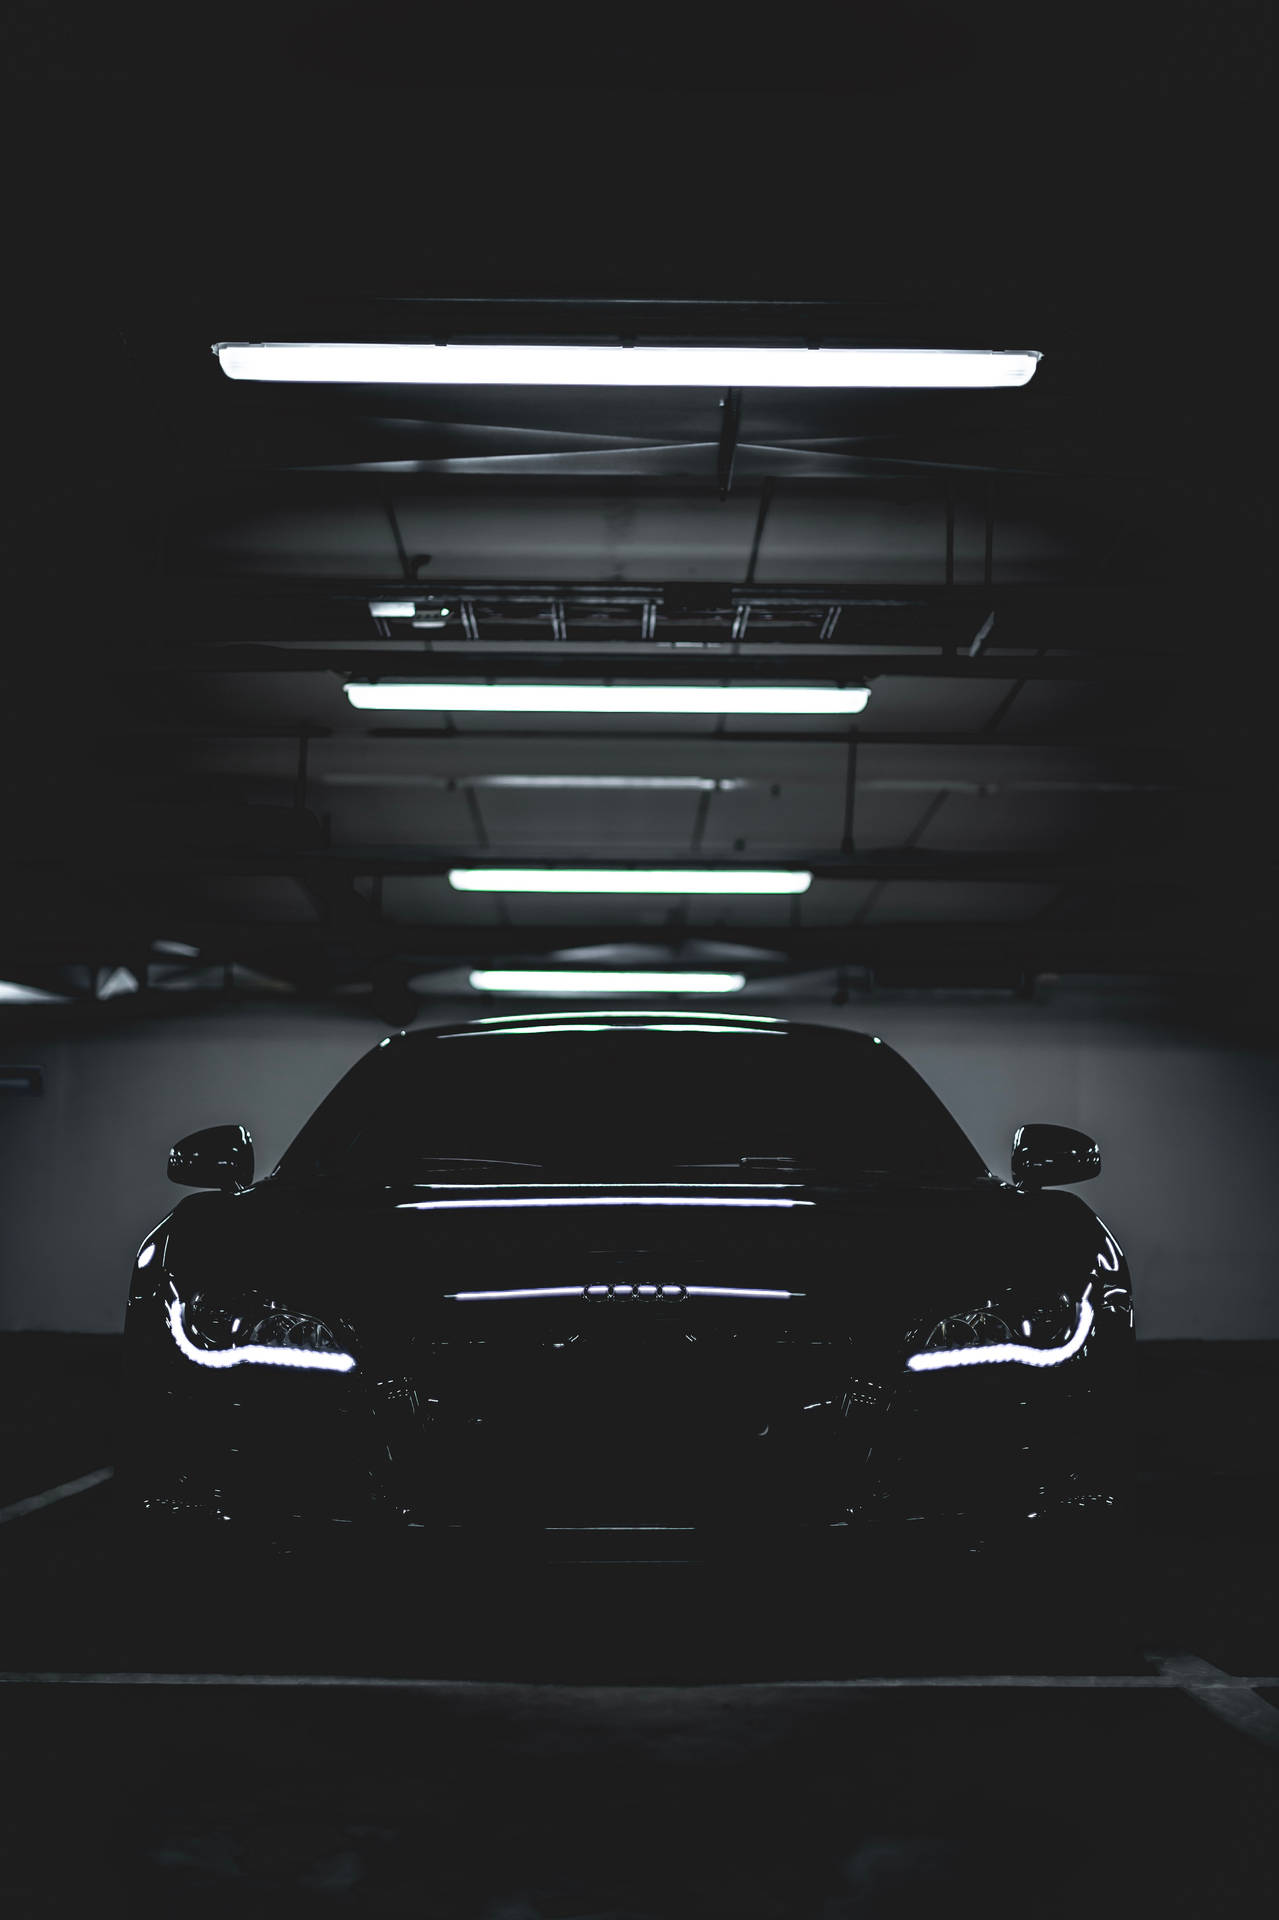 A Black Car In A Dark Parking Garage